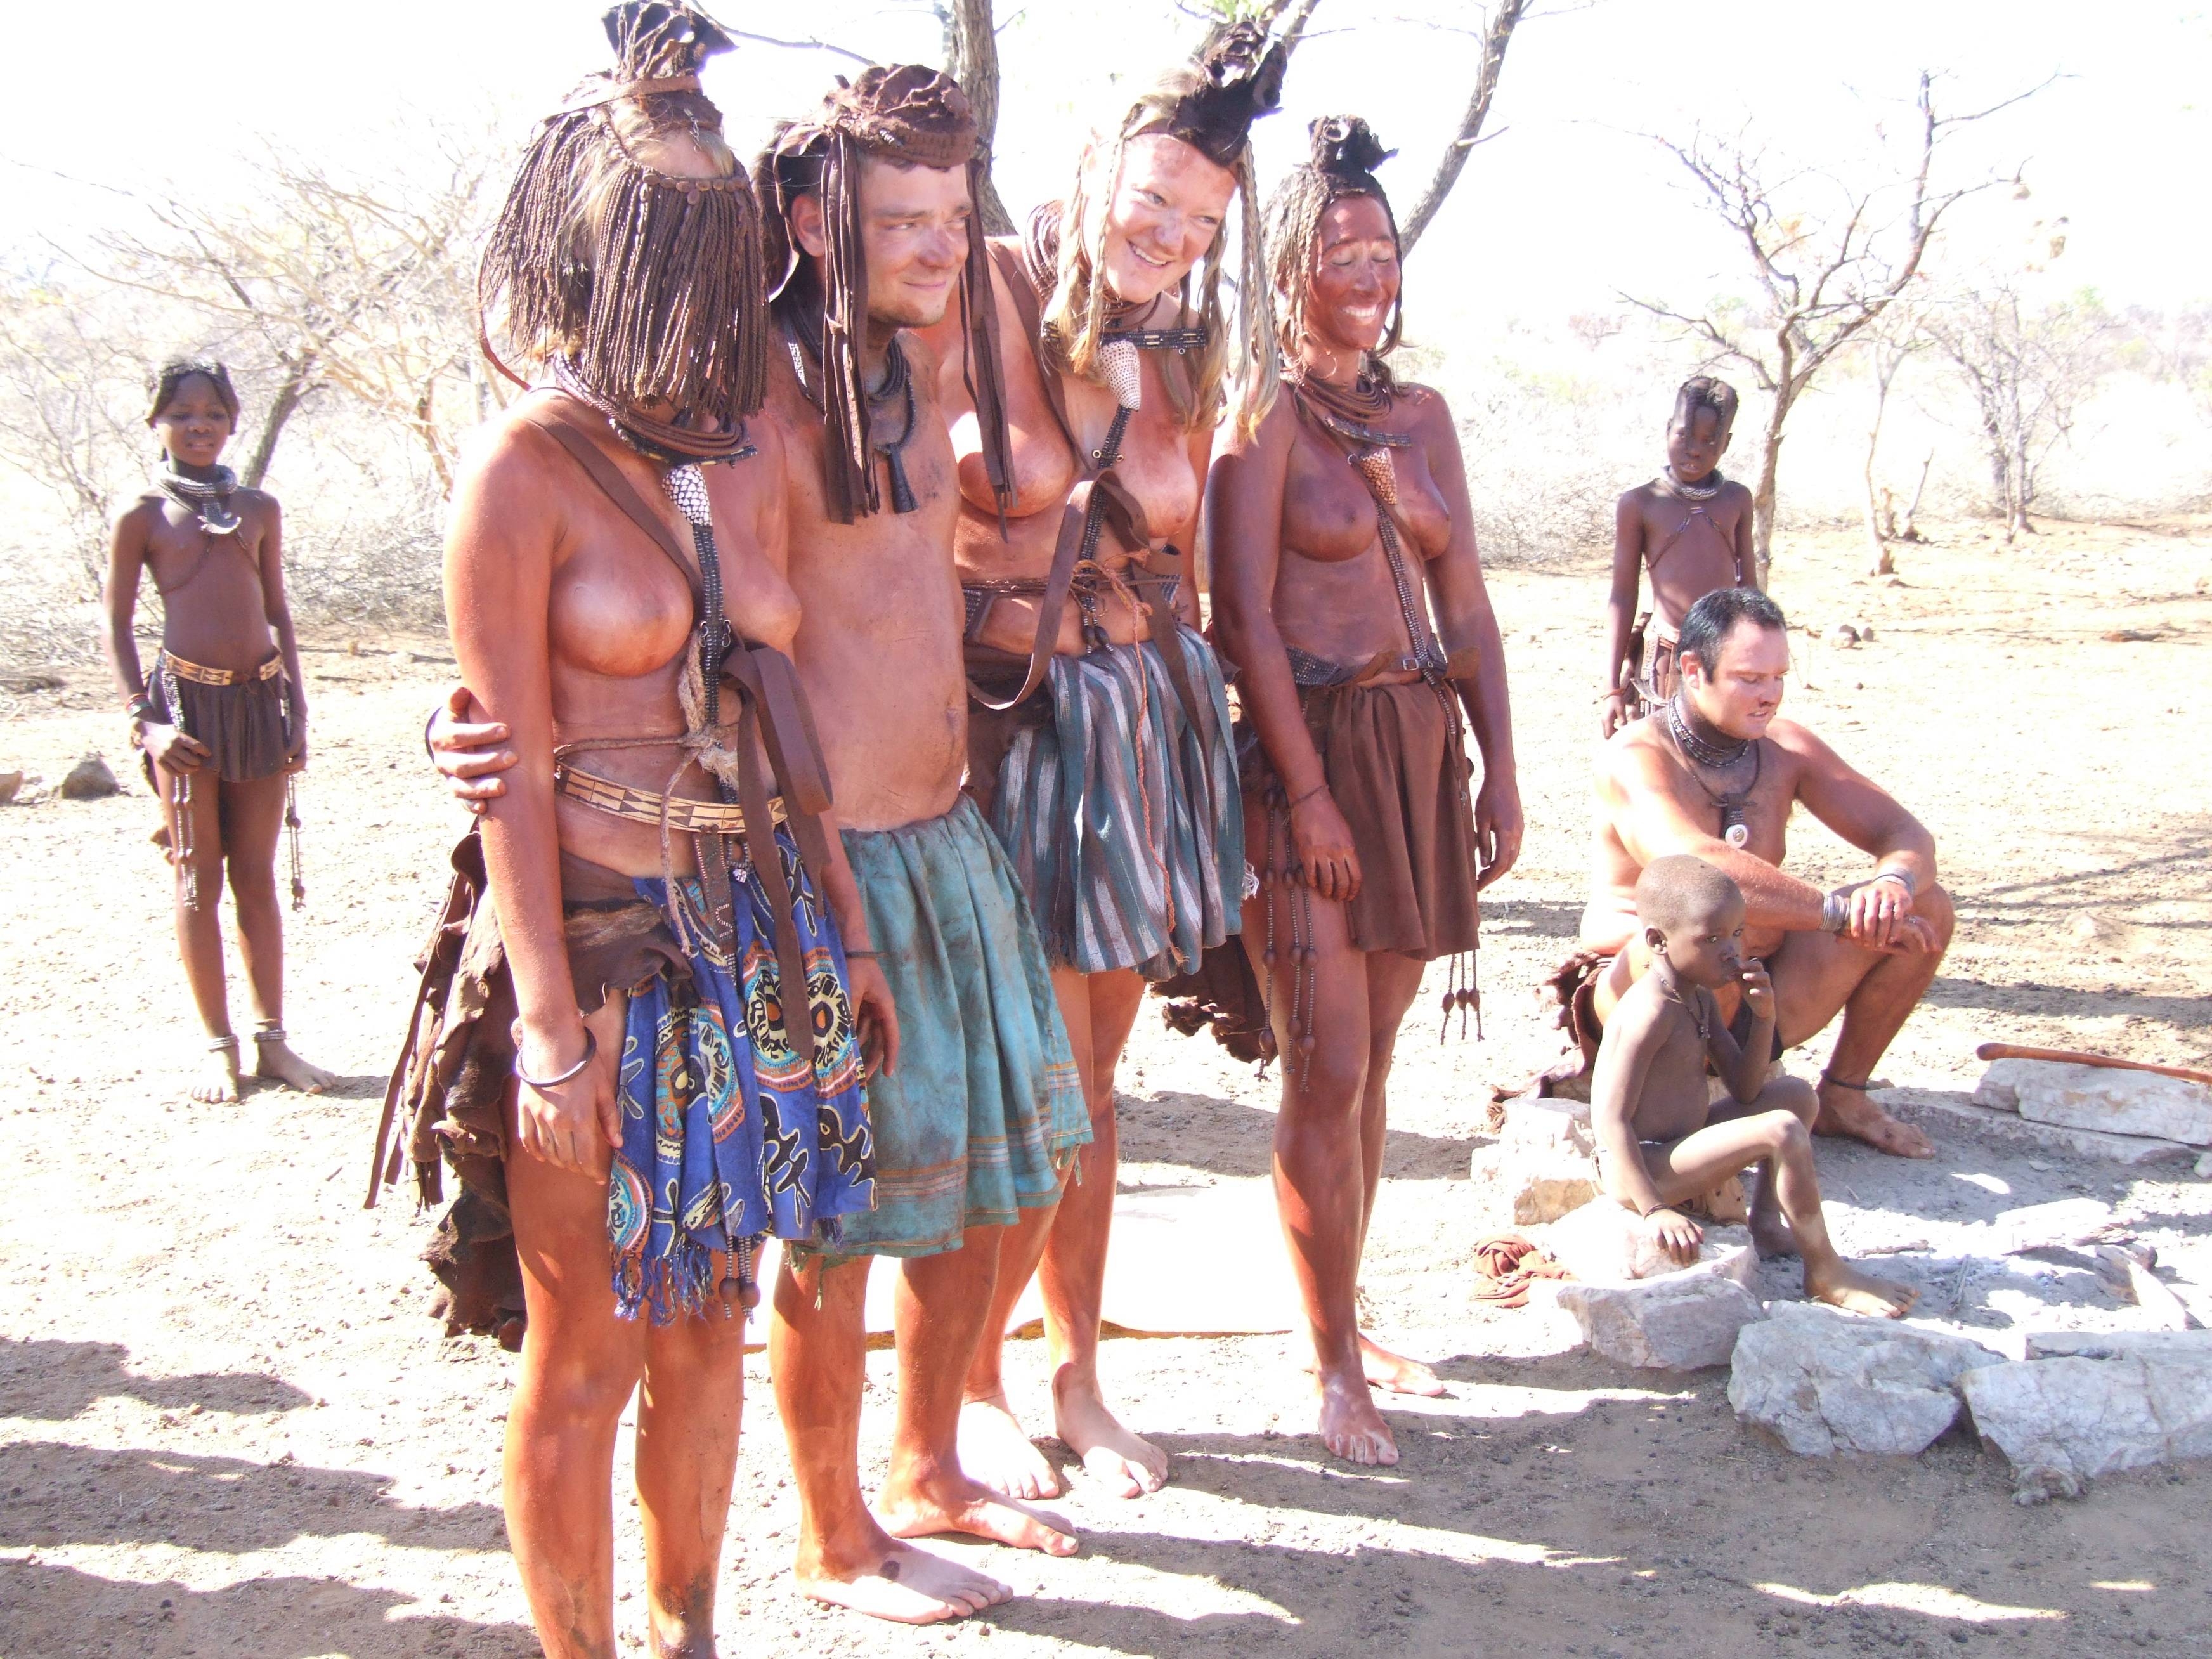 племя с голыми мужиками фото 80